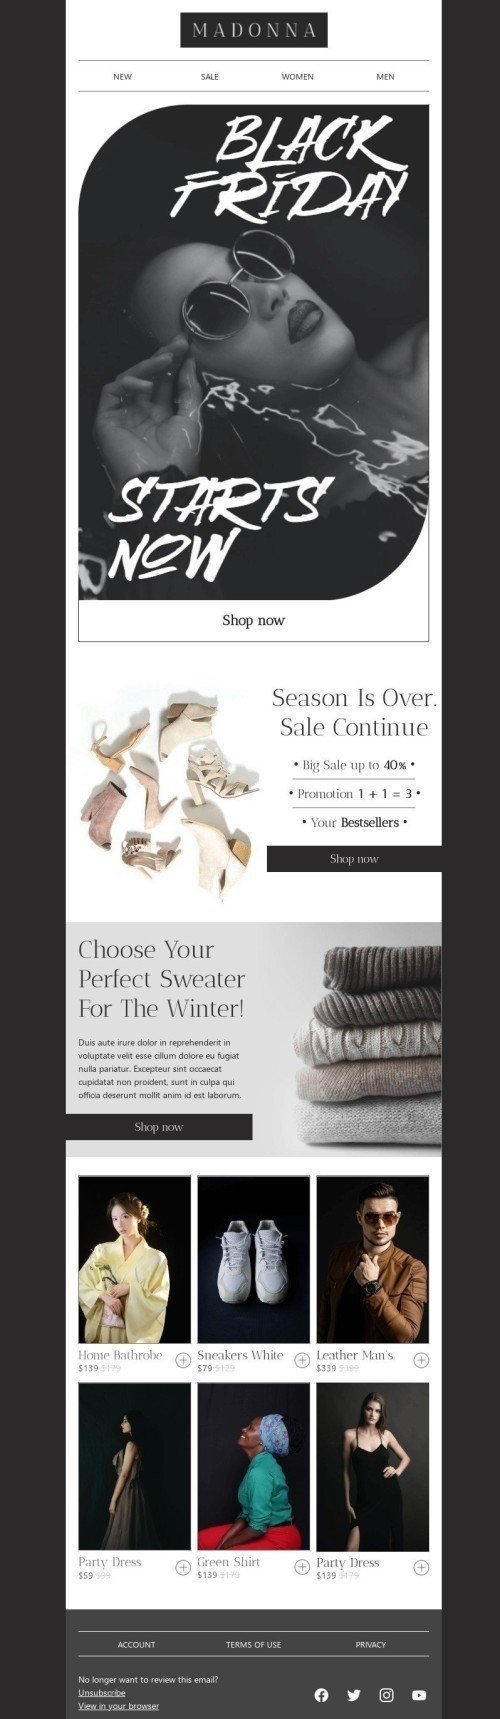 Modelo de E-mail de «Escolha o seu suéter perfeito» de Black Friday para a indústria de Moda Visualização de desktop